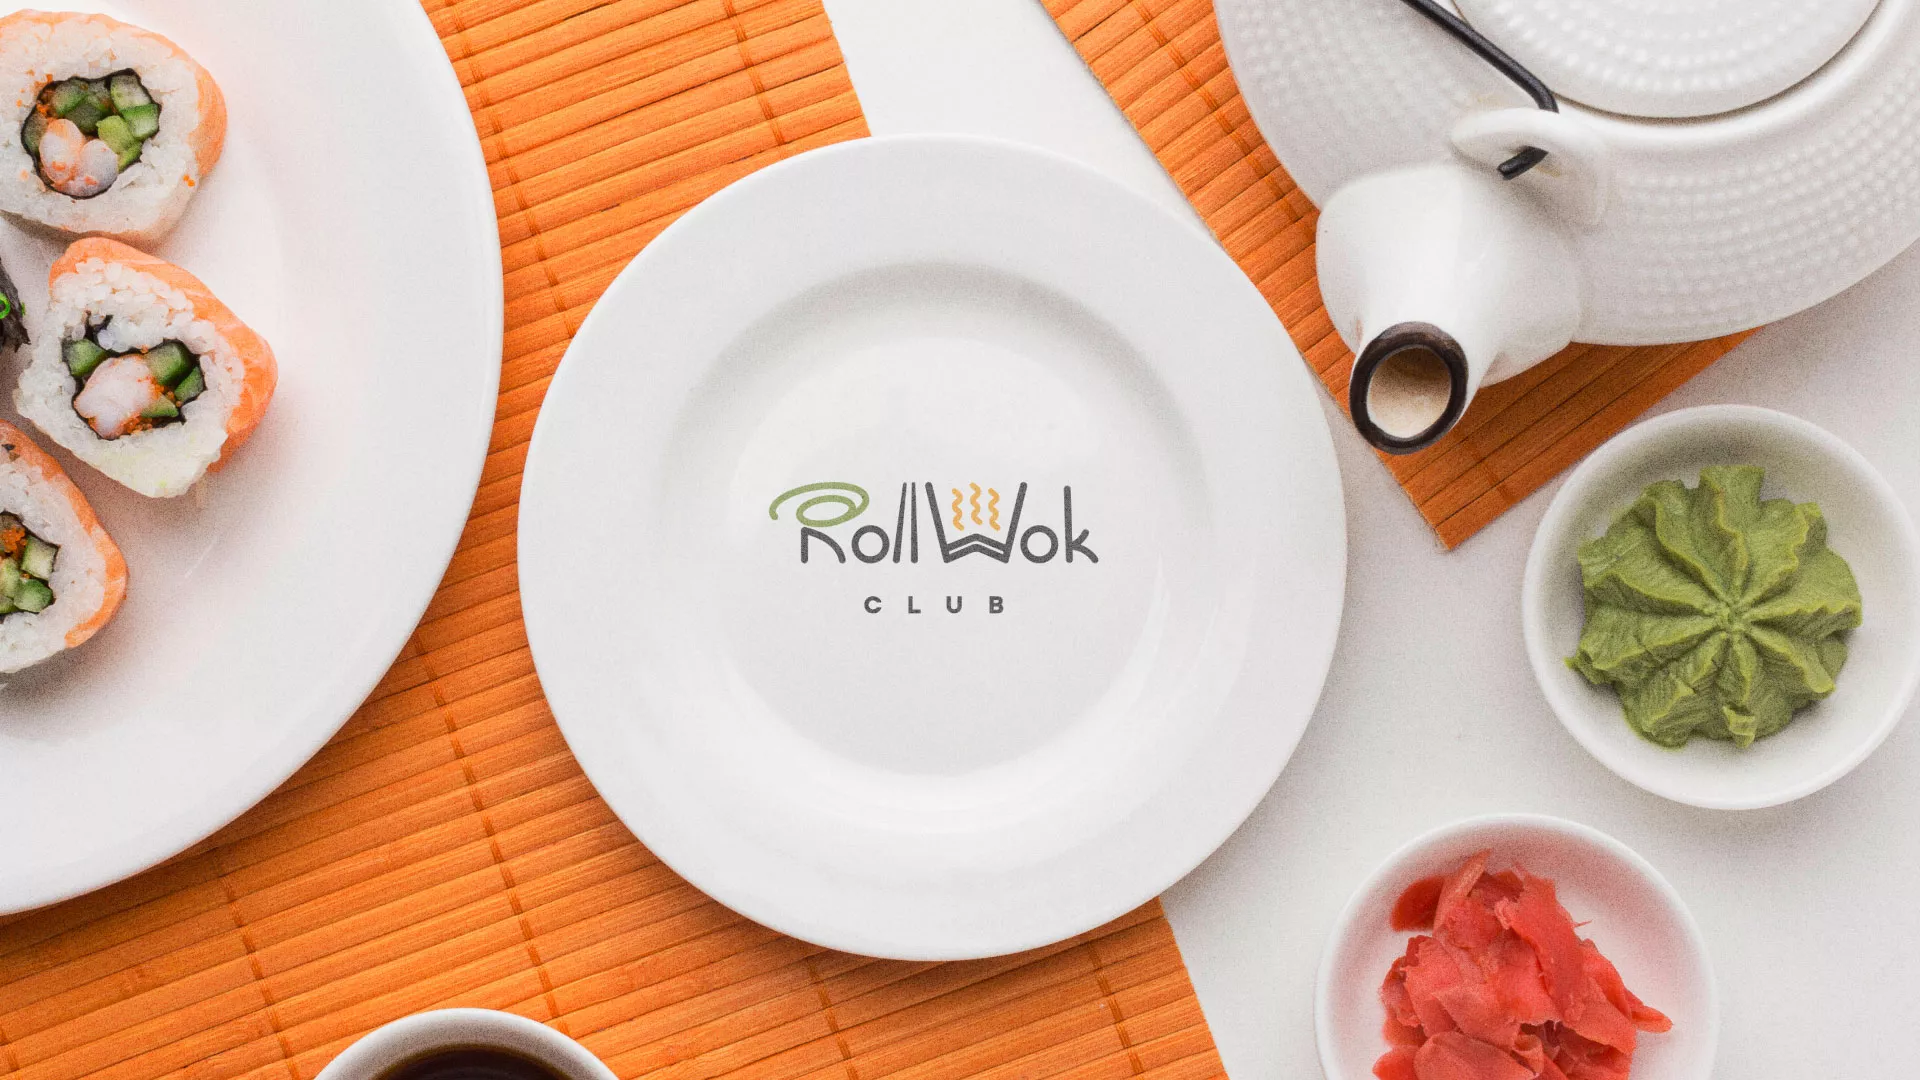 Разработка логотипа и фирменного стиля суши-бара «Roll Wok Club» в Московском